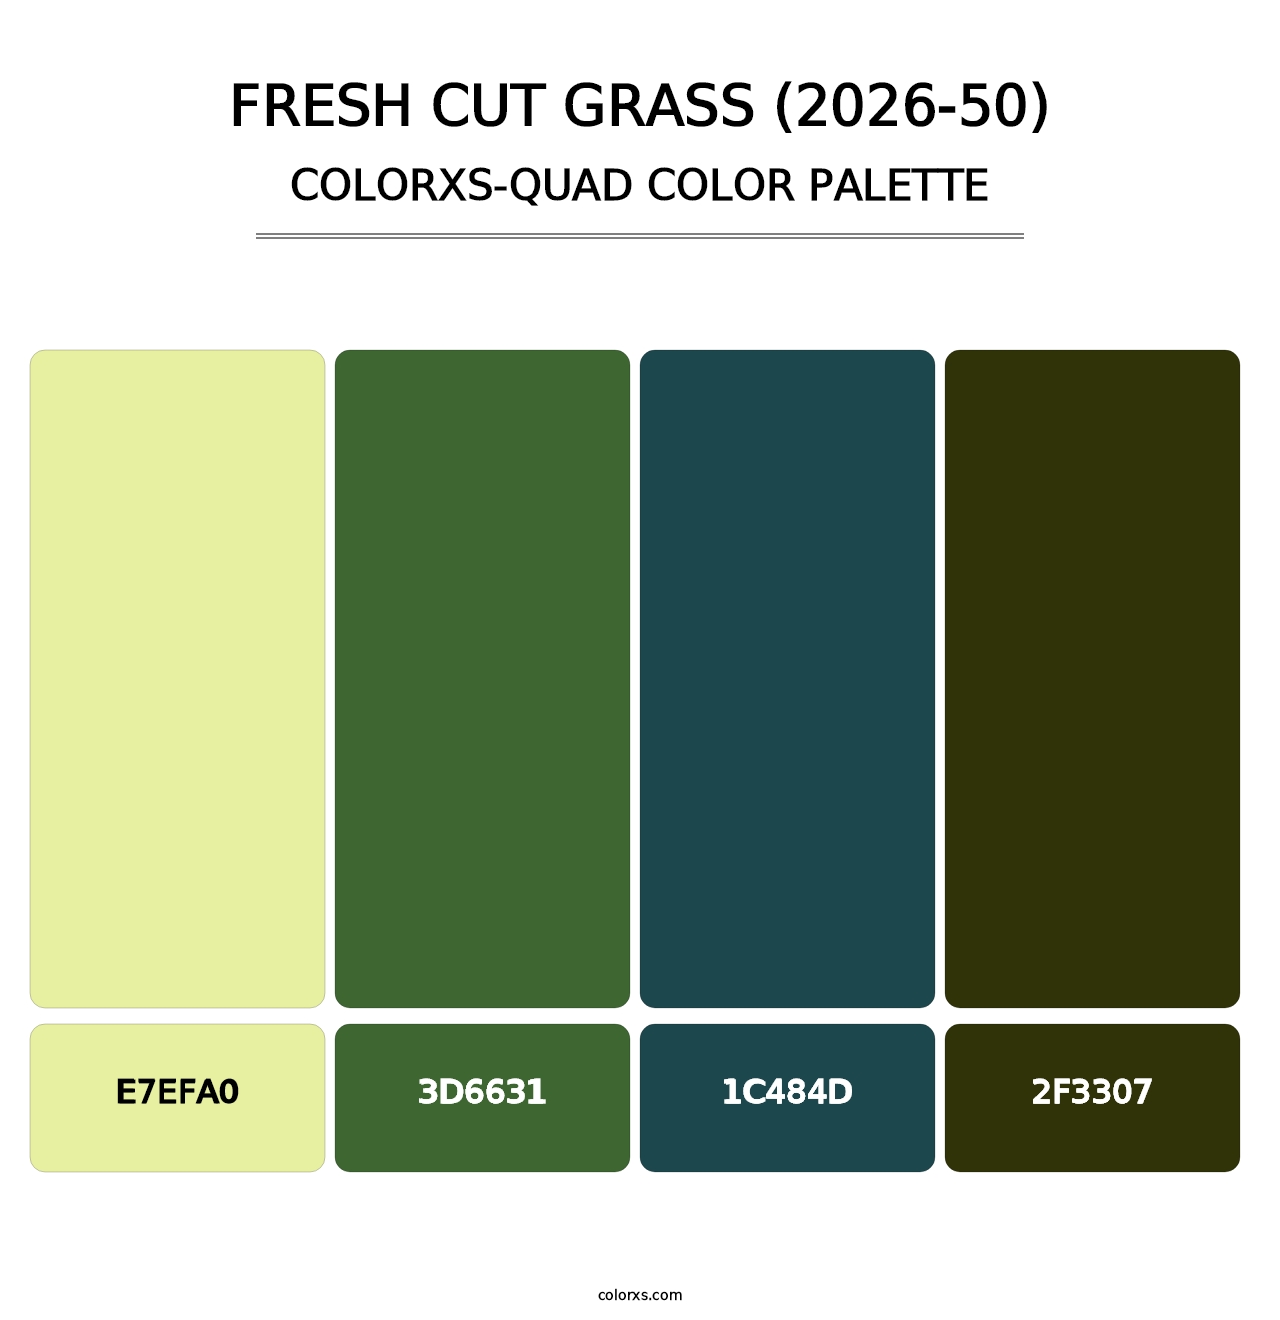 Fresh Cut Grass (2026-50) - Colorxs Quad Palette